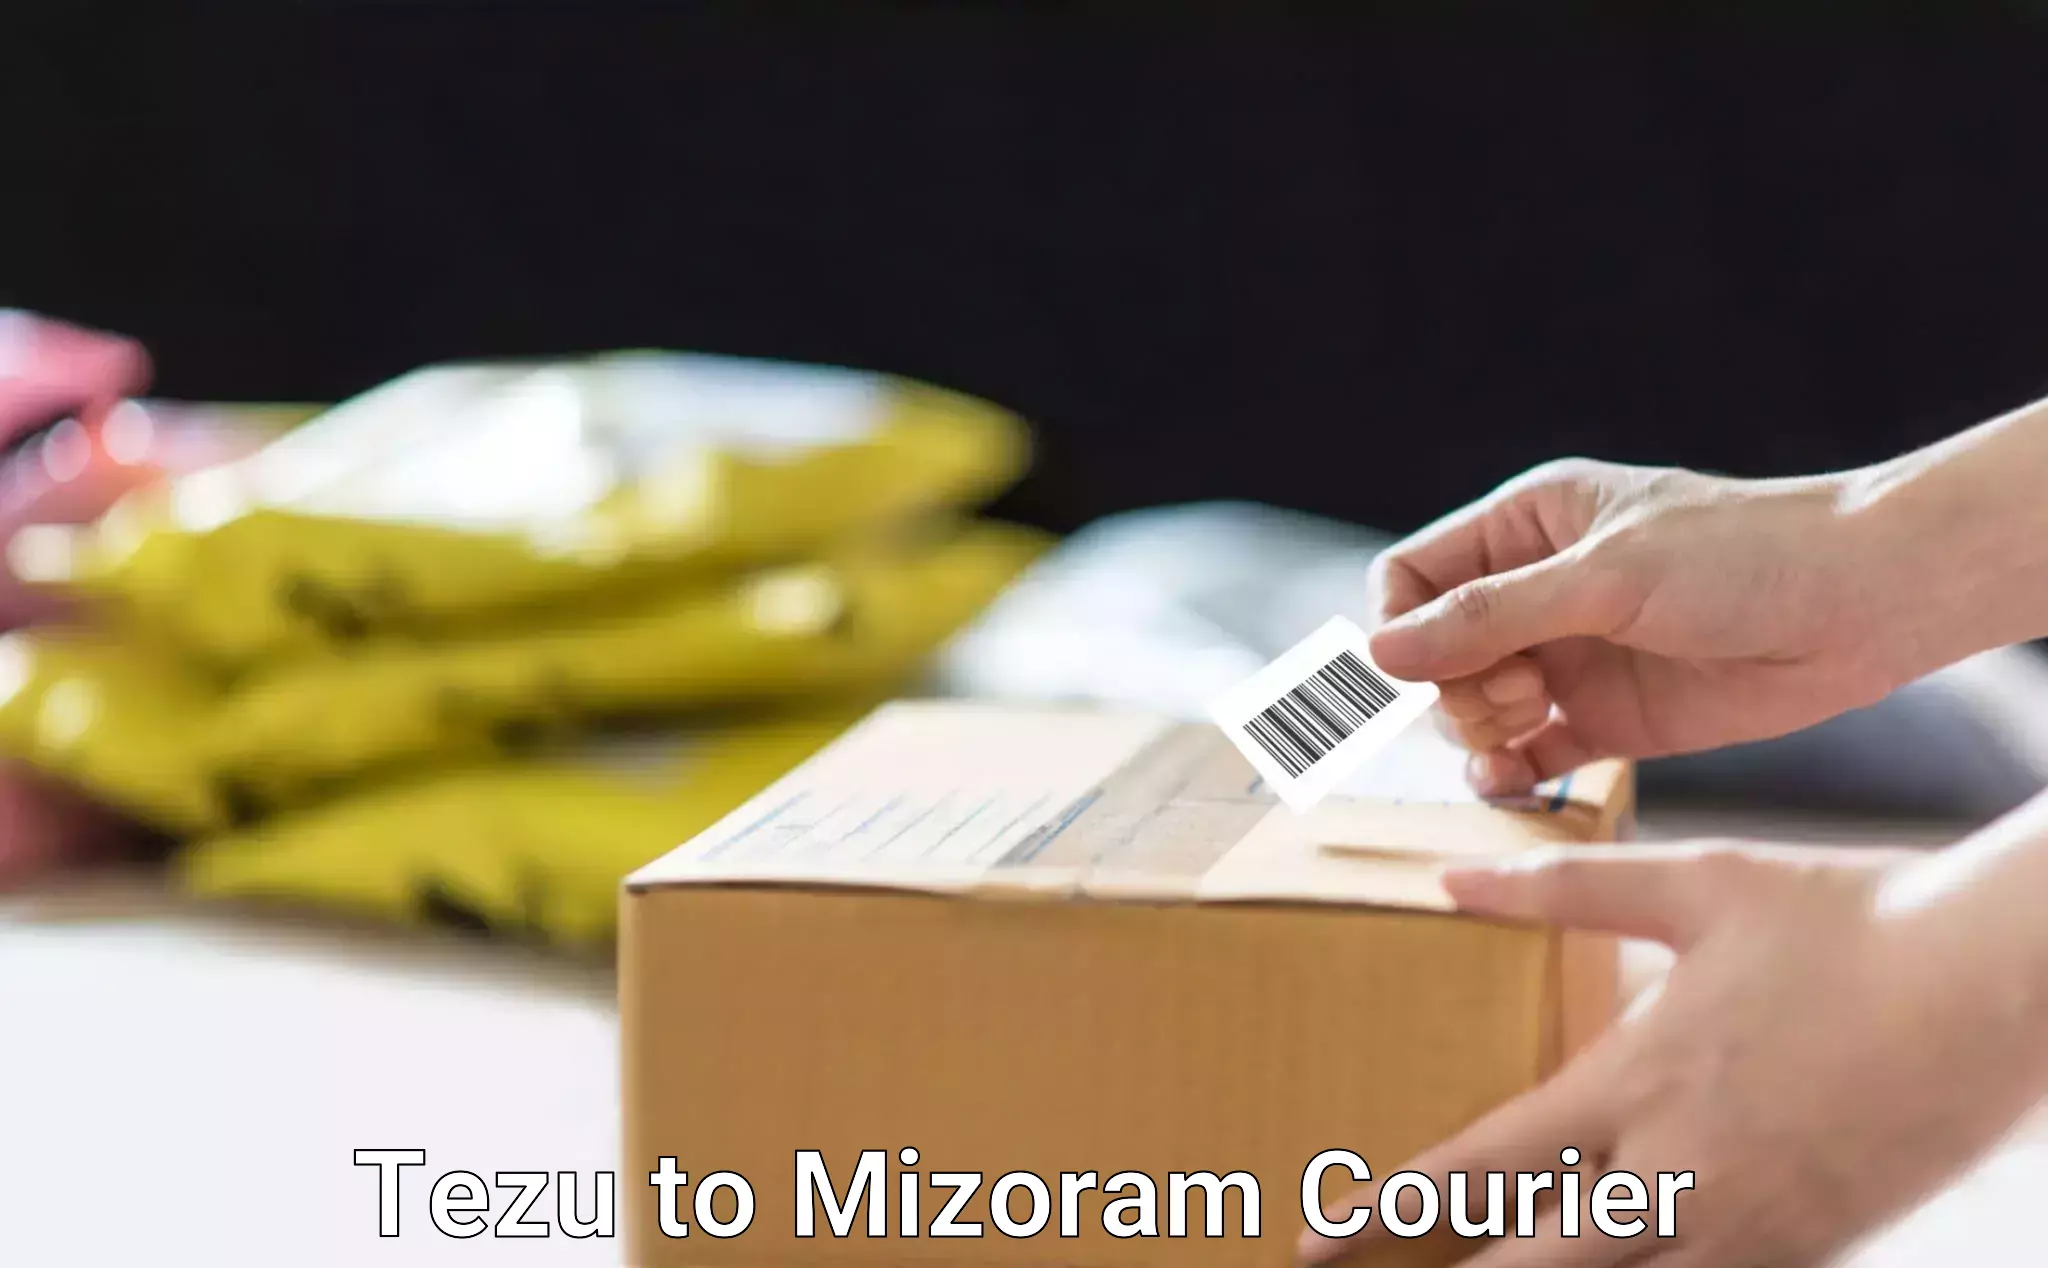 International courier networks Tezu to Mizoram